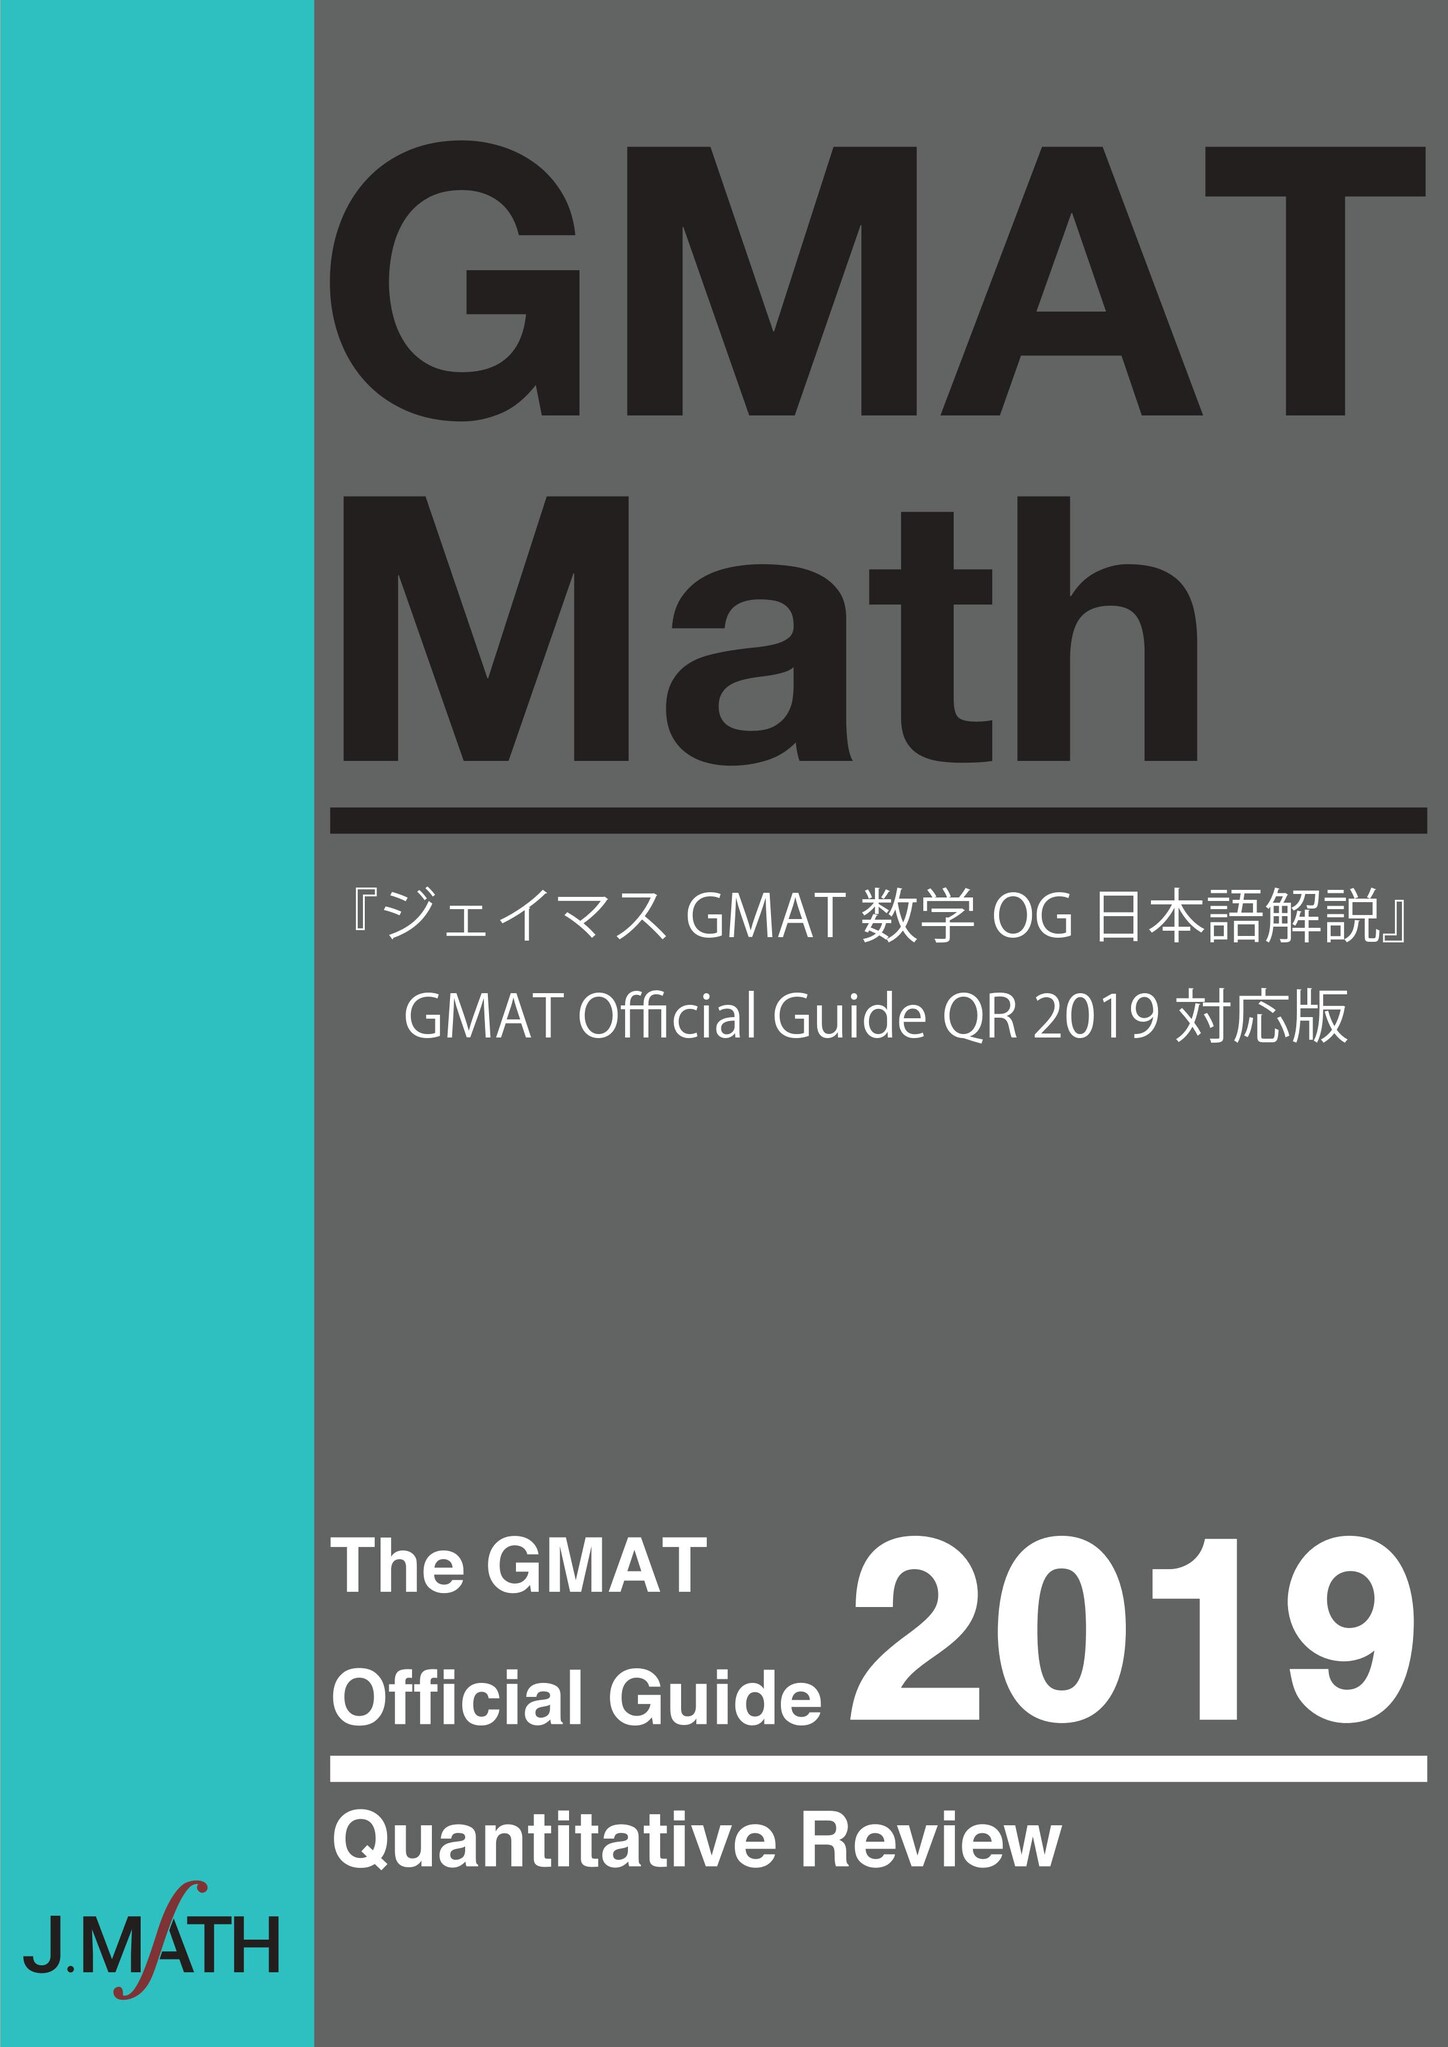 海外MBA受験対策 『GMAT Official Guide 2019 Quantitative Review ...